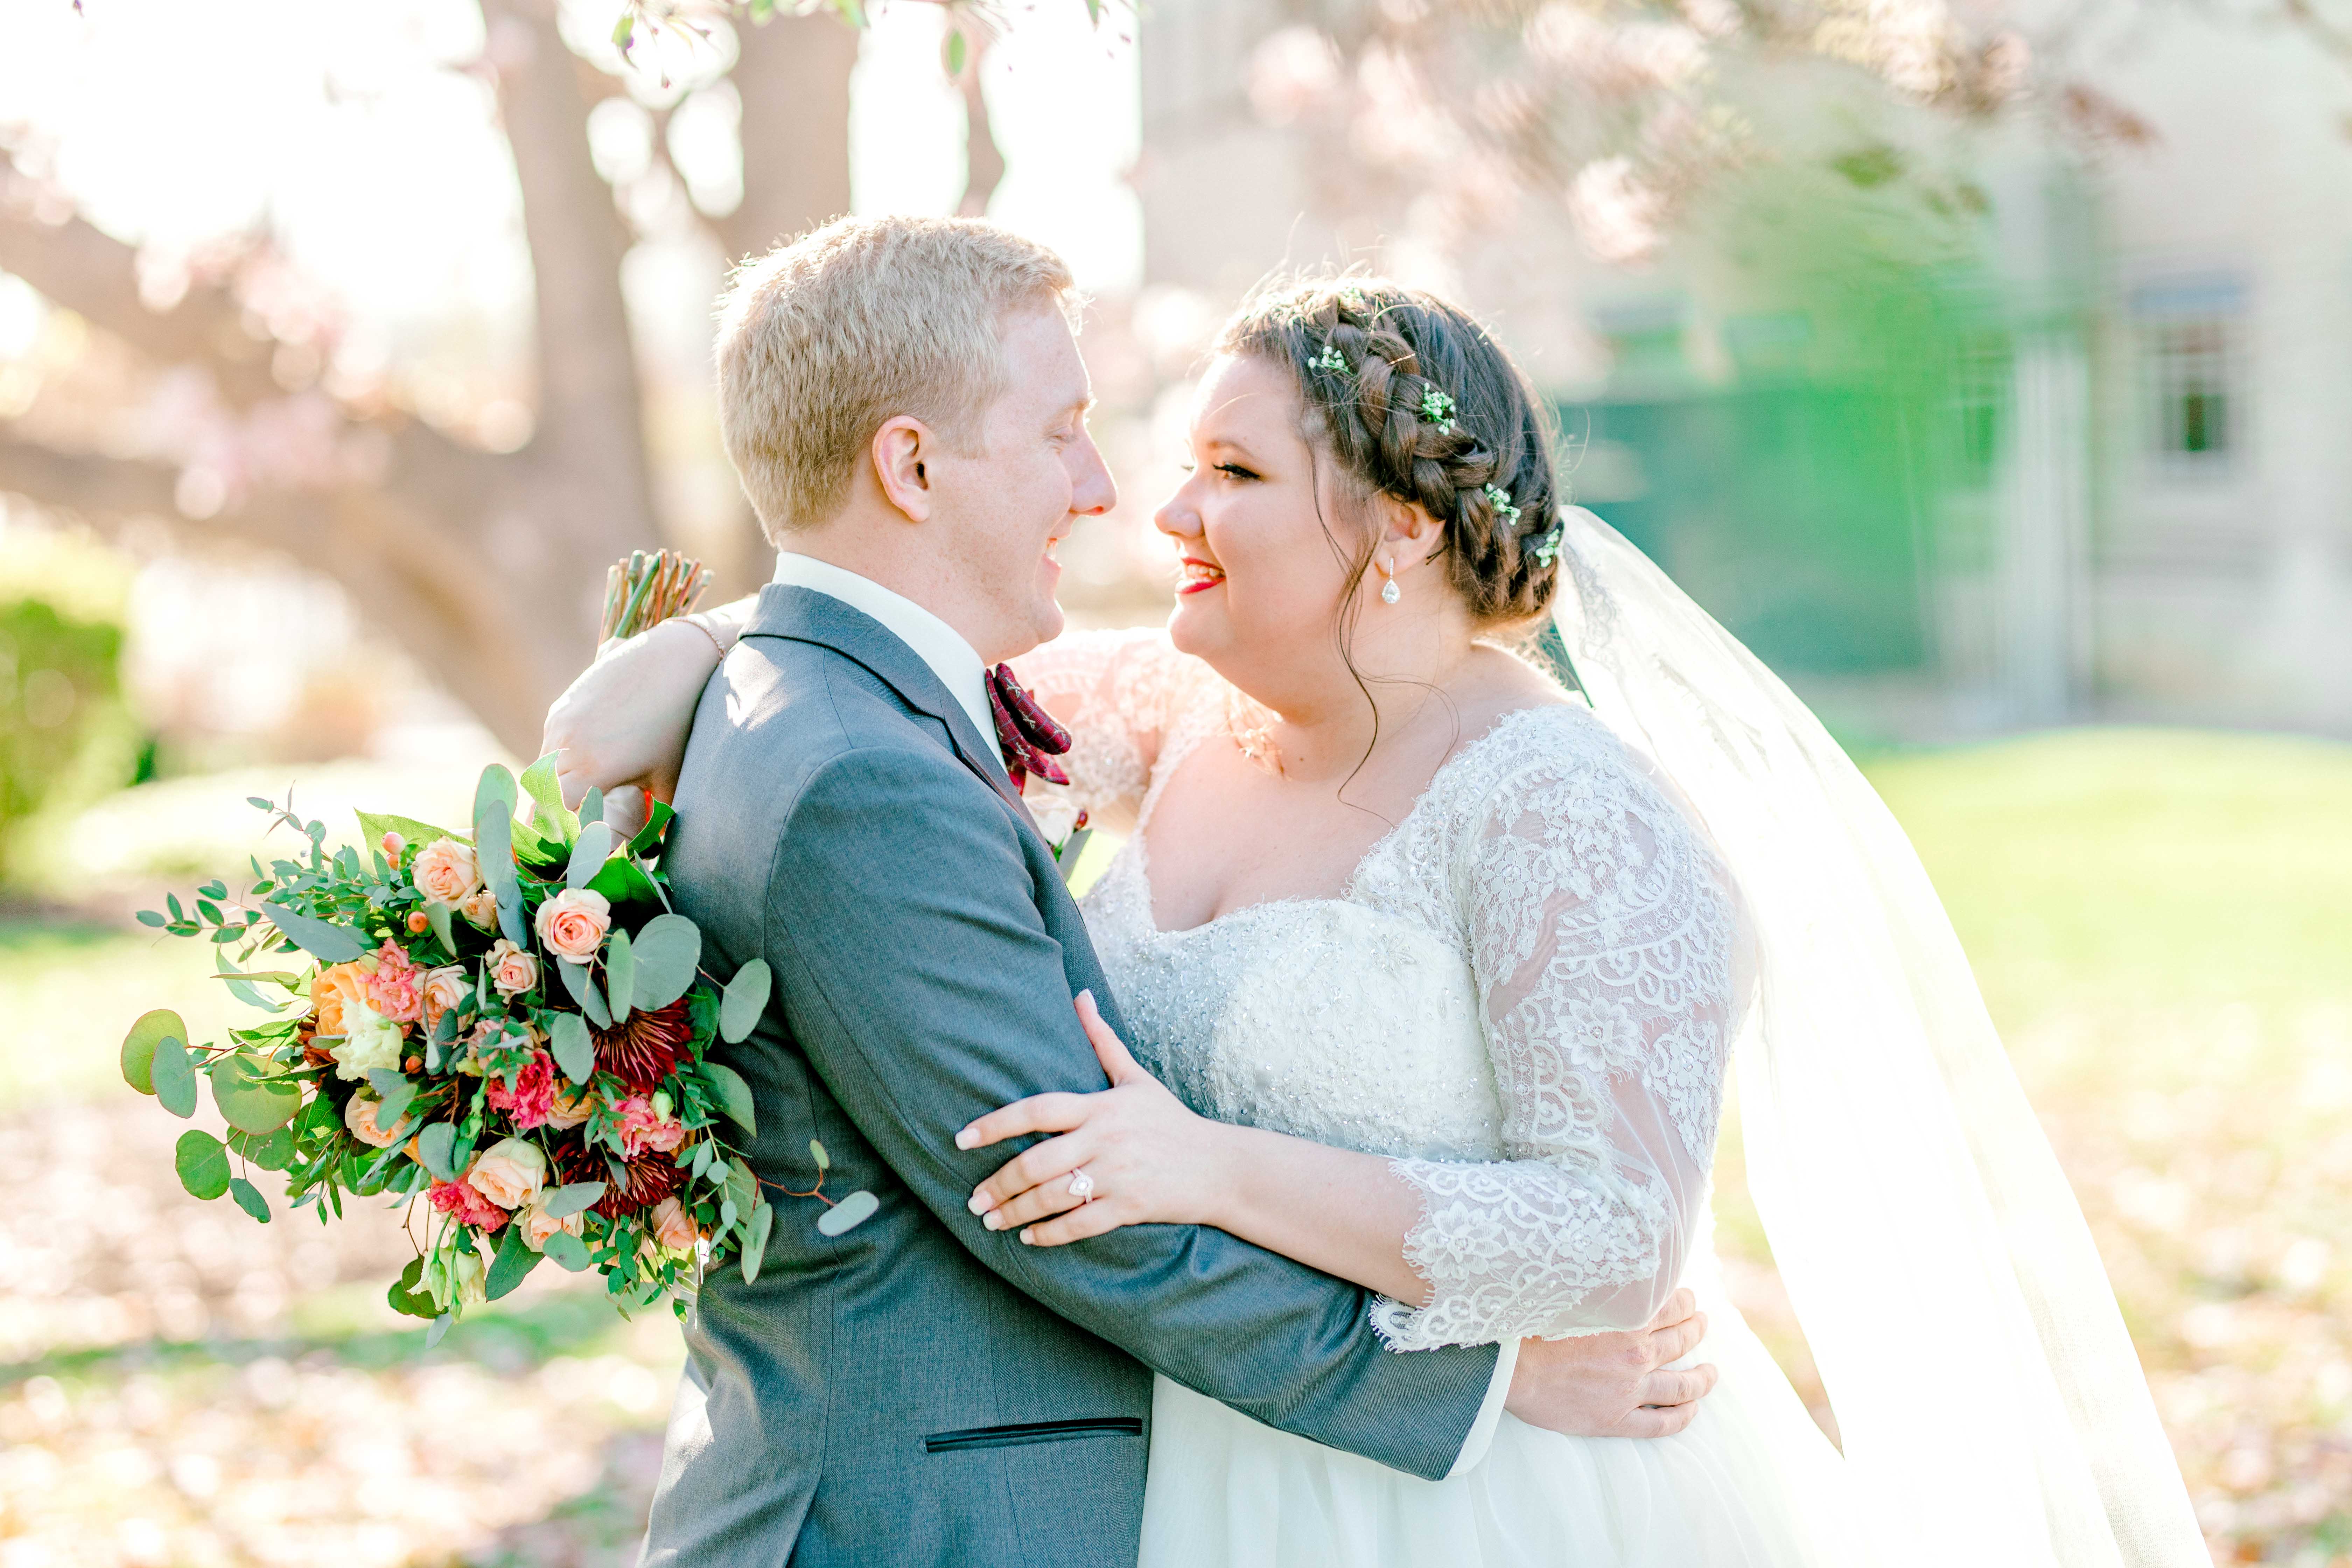 Missy & Sean Wedding | Aubrey Lynn Photography